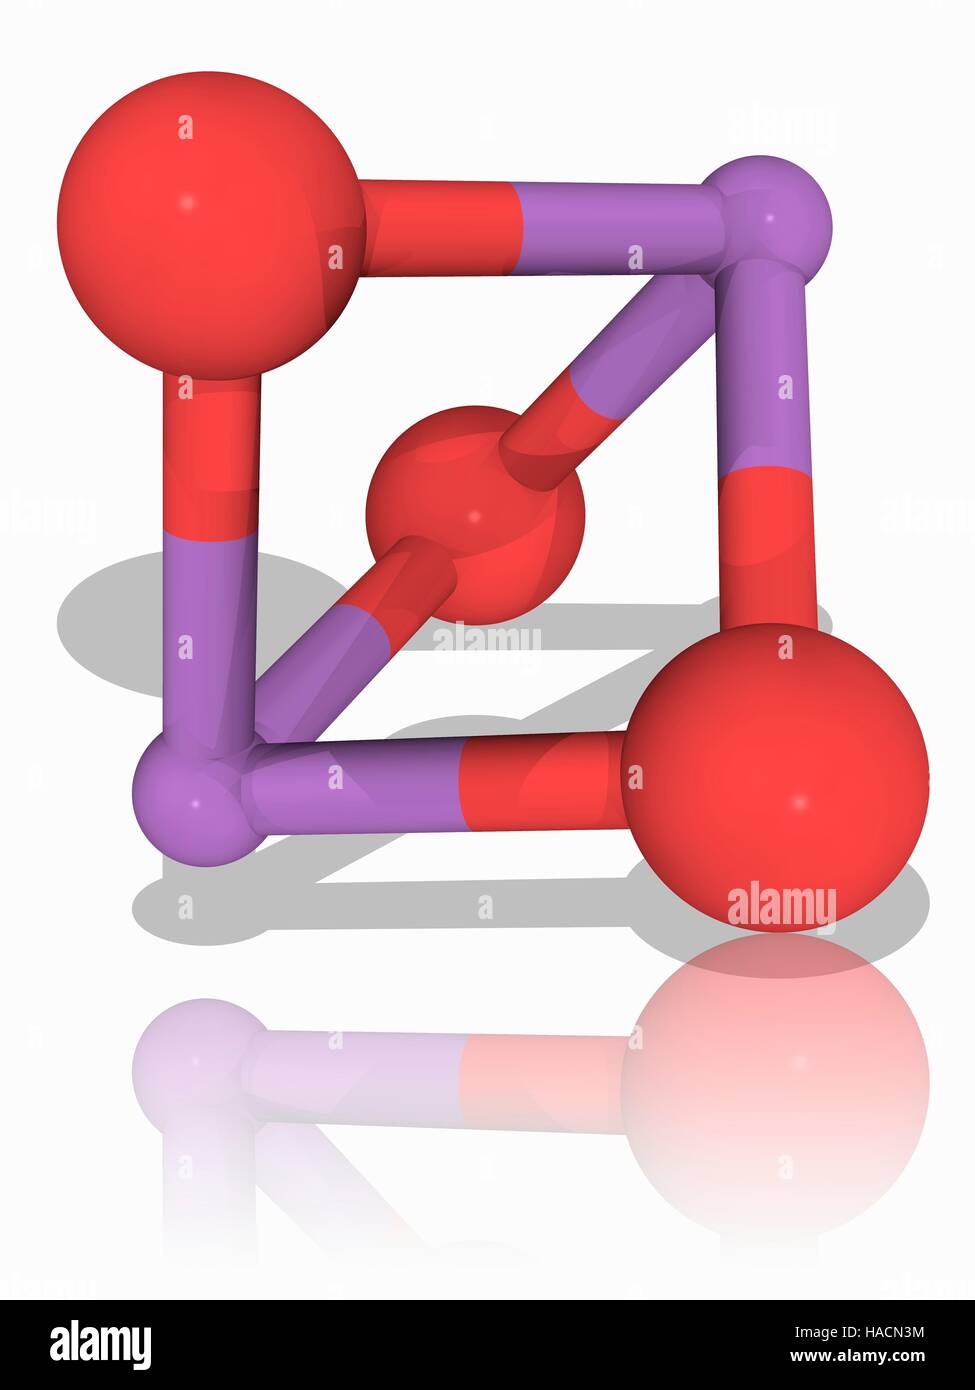 Arsentrioxid. Molekulares Modell des anorganischen chemischen Arsentrioxid (As2.O3). Diese Chemikalie wird in der chemischen Industrie als Vorstufe zu Arsen-Verbindungen wie Organoarsenic Verbindungen verwendet, die Insektizide, Herbizide und Fungizide enthalten. Atome als Kugeln dargestellt werden und sind farblich gekennzeichnet: Arsen (violett) und Sauerstoff (rot). Abbildung. Stockfoto